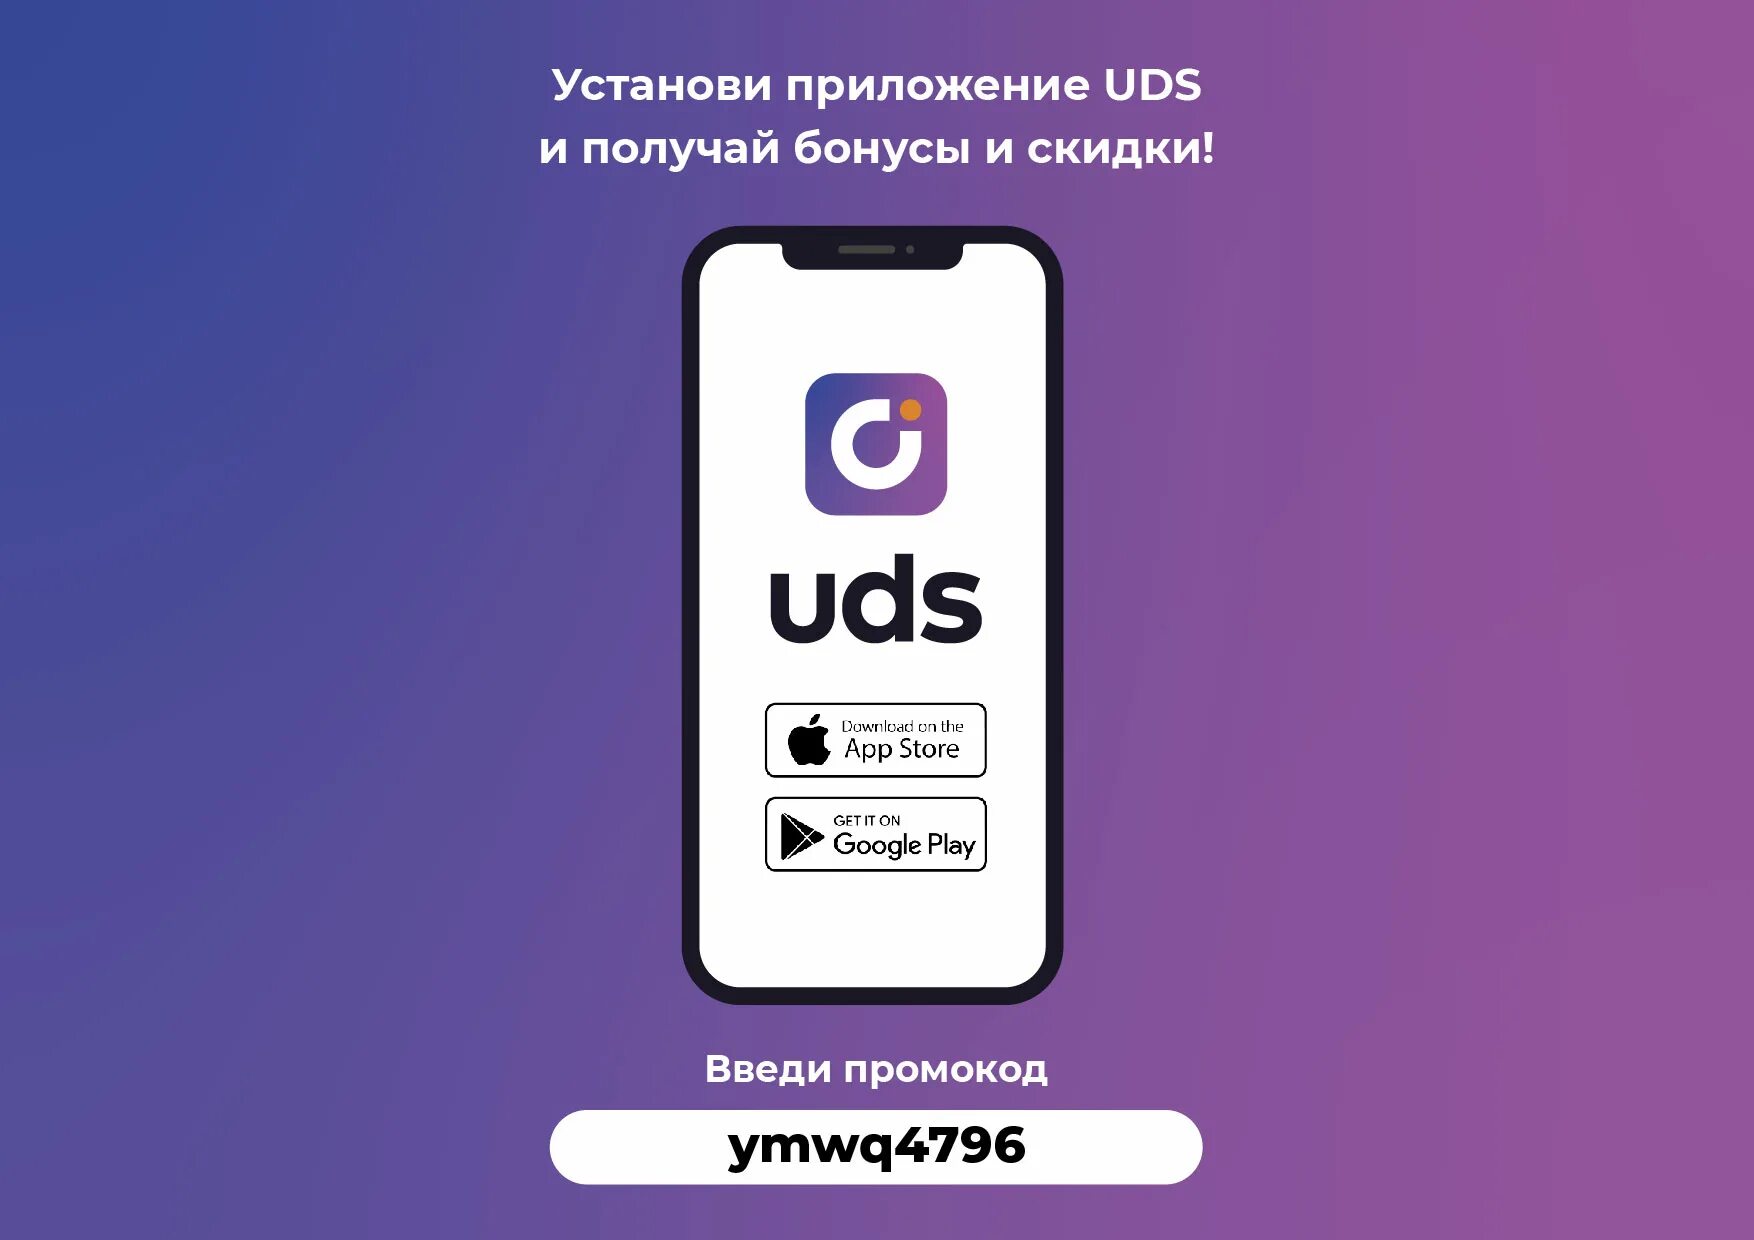 UDS приложение. Бонусная программа UDS. Бонусное приложение UDS. UDS скидки. Https apps bonus app